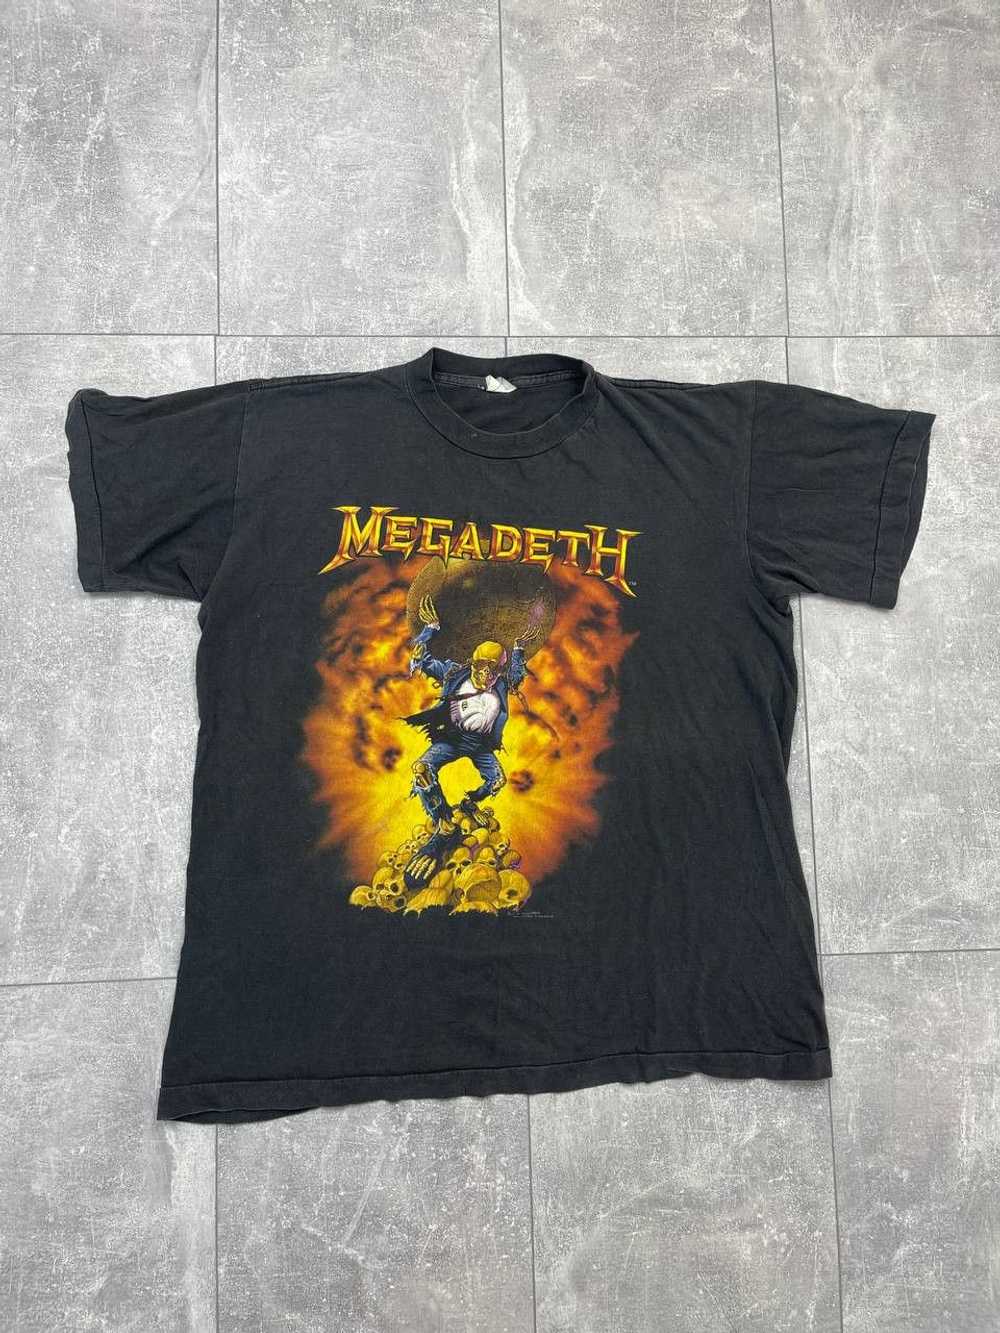 Megadeth × Rock T Shirt × Vintage Megadeth 1991 O… - image 1